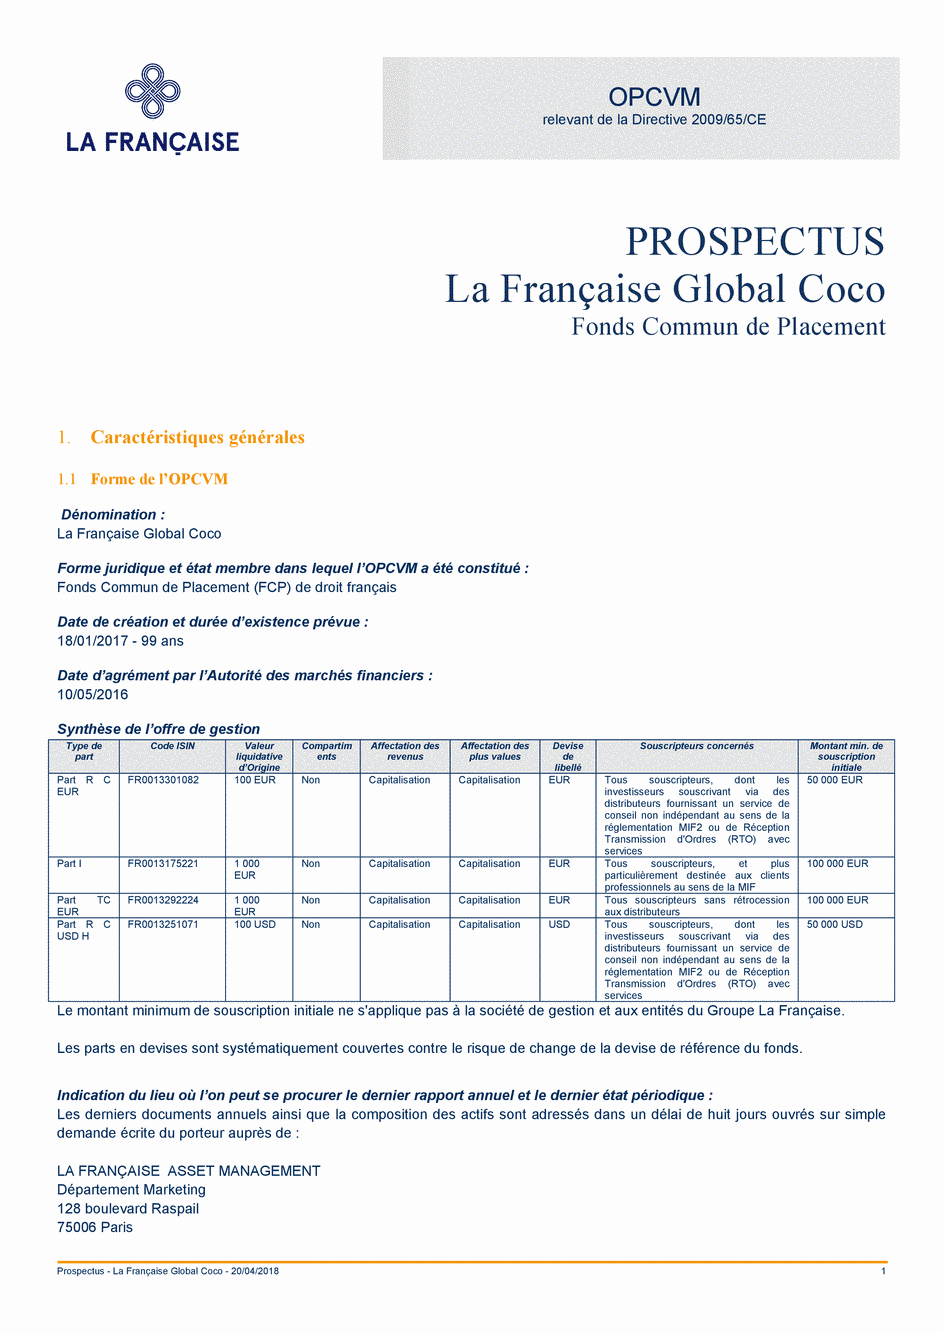 Prospectus La Française Global Coco - Part R D USD H - 20/04/2018 - French